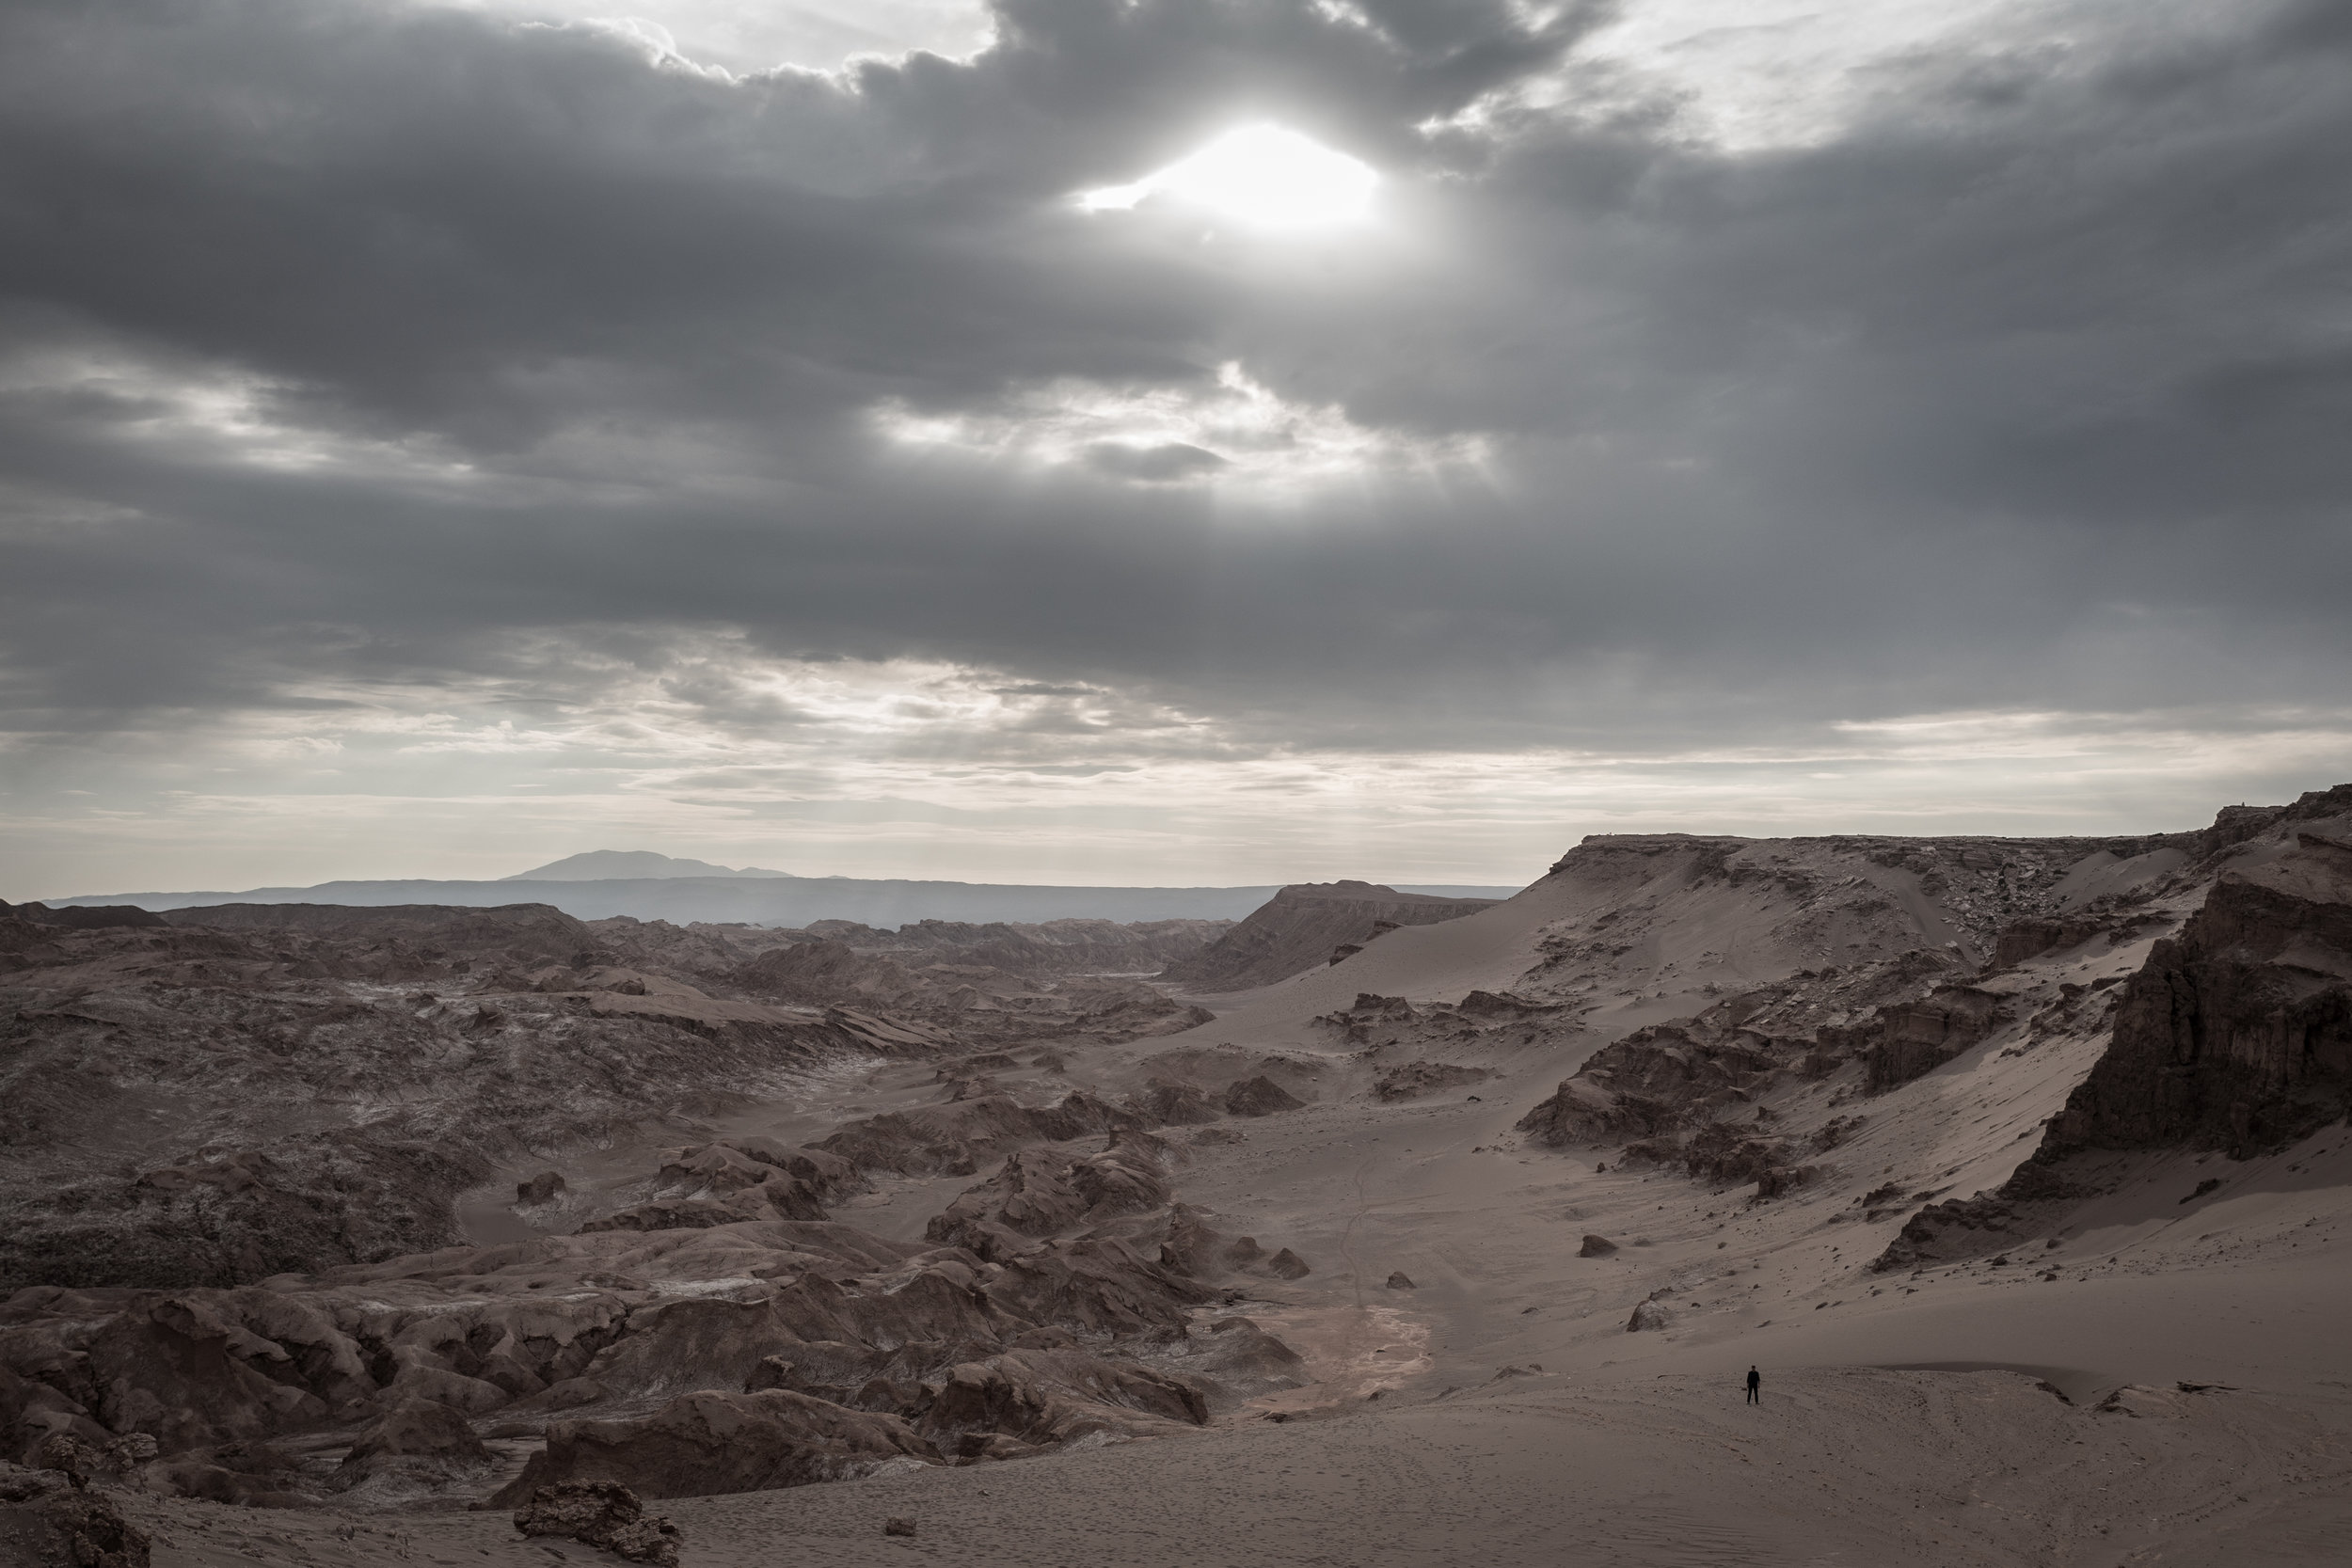 The Valley of the Moon - Atacama Desert 2018